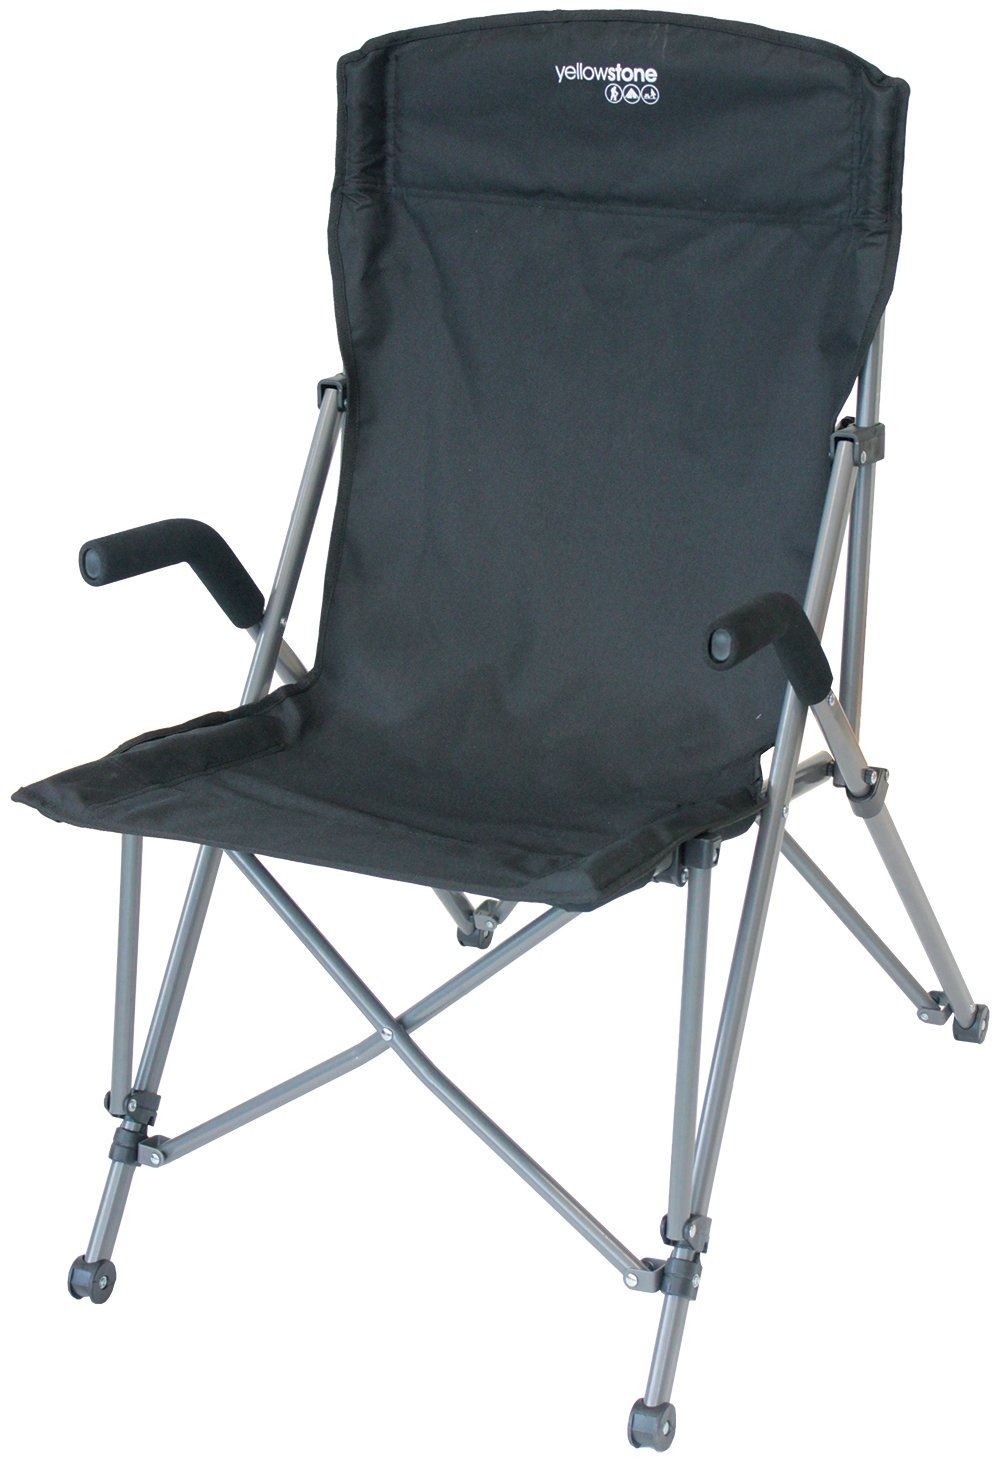 Portable lightweight folding camping chair ultra light